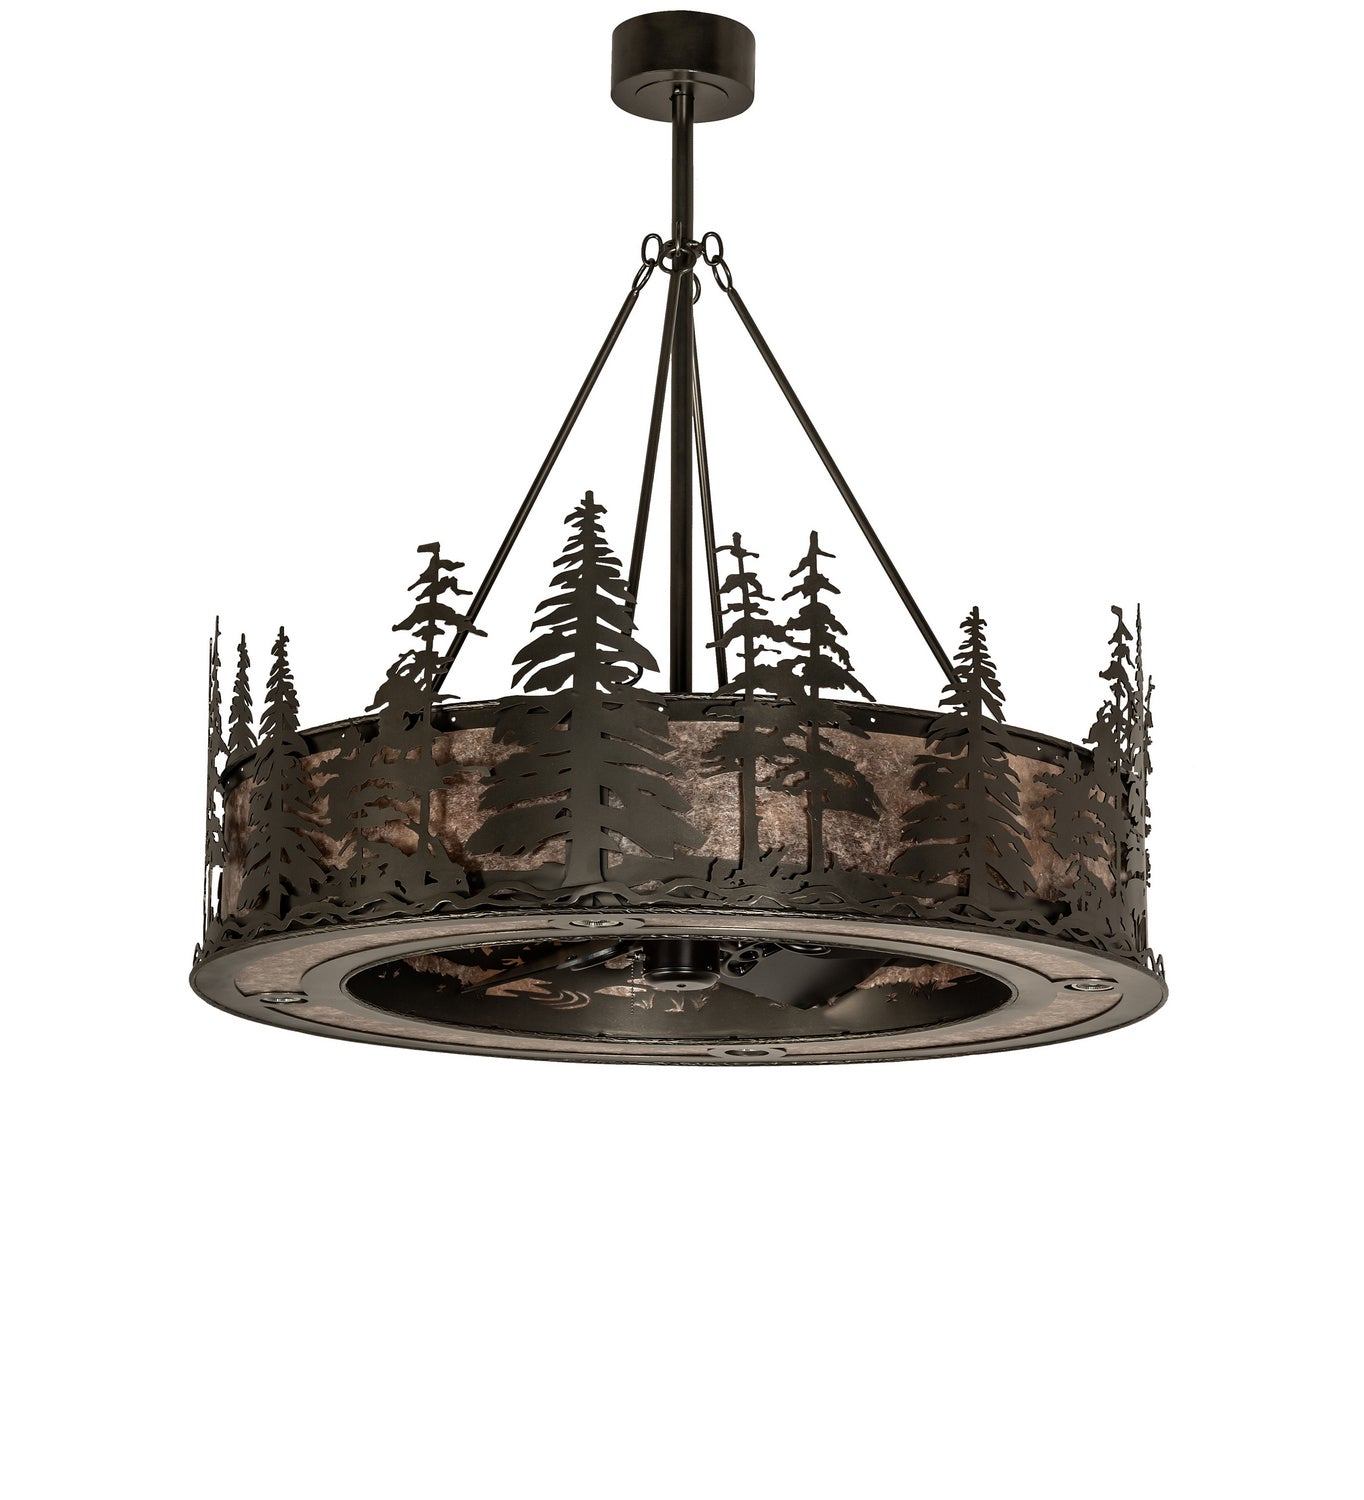 Meyda Tiffany Tall Pines 248834 Ceiling Fan - Oil Rubbed Bronze